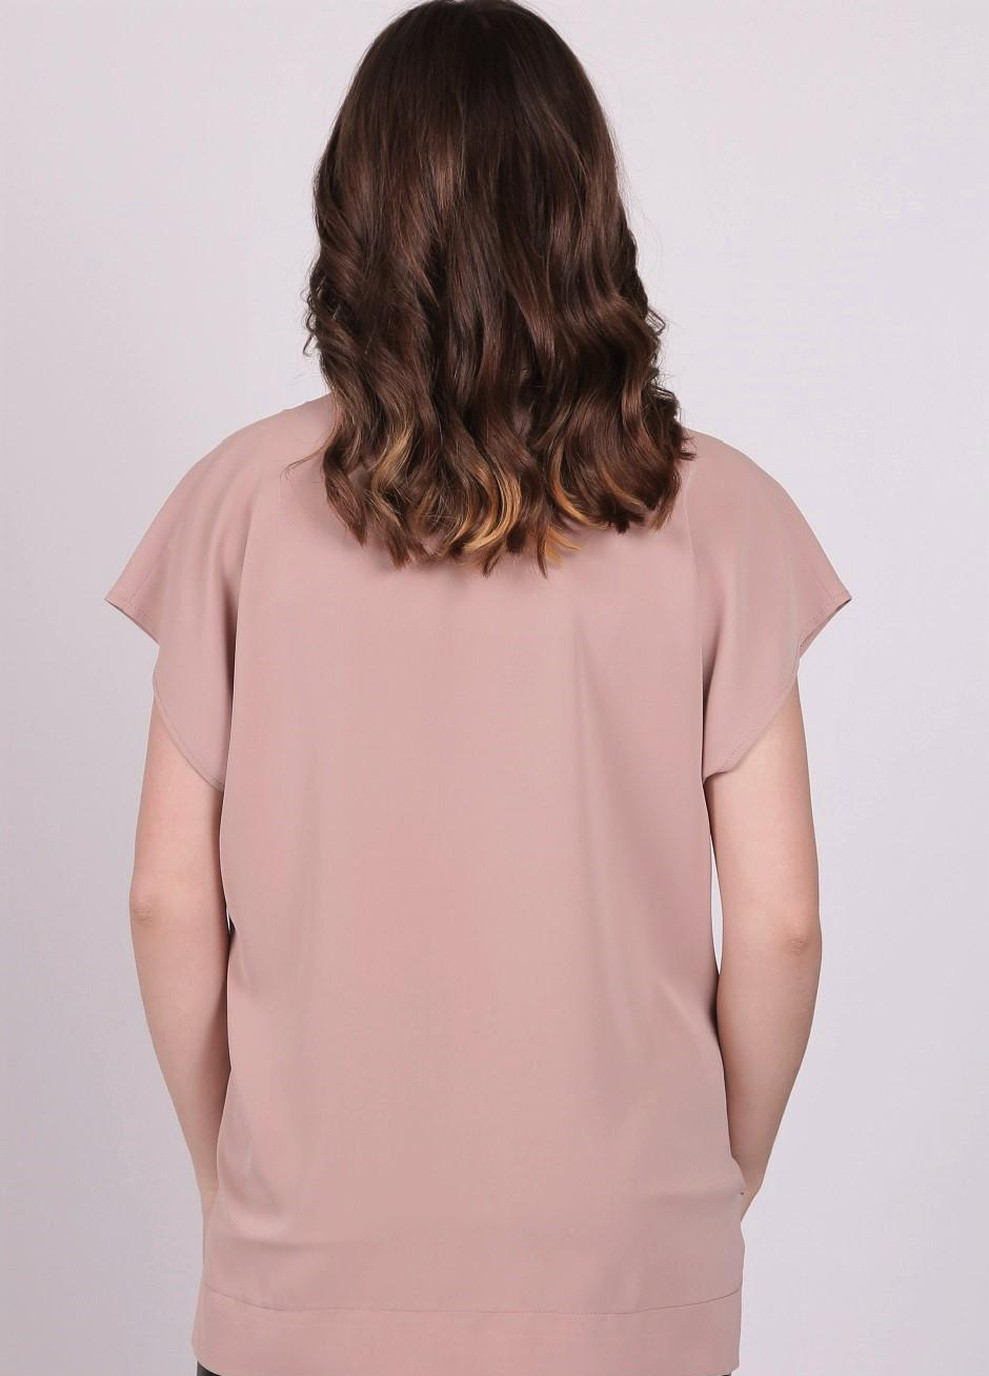 Світло-коричнева літня блузка жіноча 0071 однотонний софт капучино Актуаль